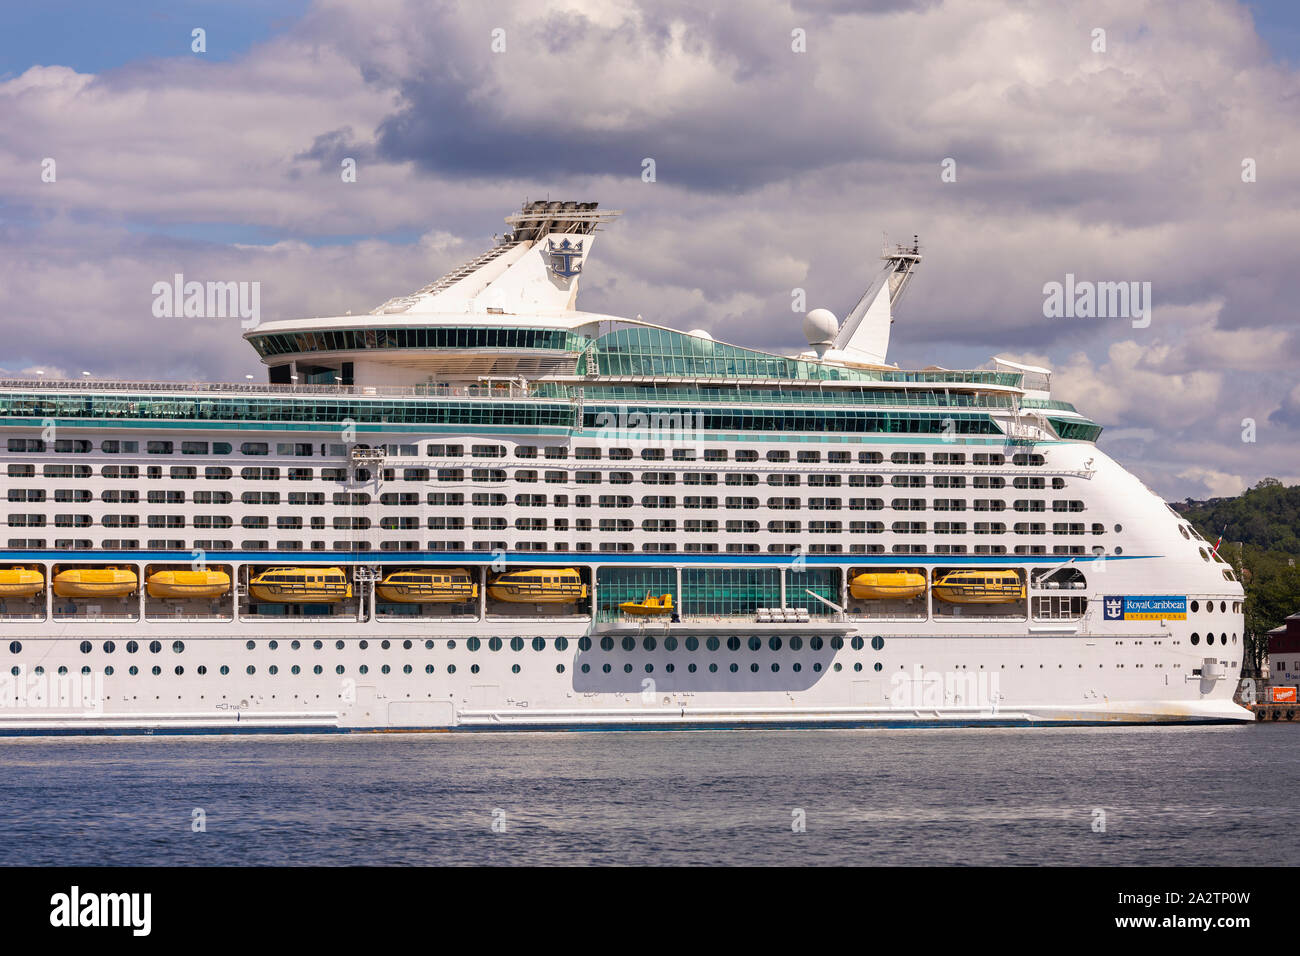 OSLO, Norvège - Explorer des mers, un navire de croisière Royal Caribbean, amarré au bord de la forteresse, Oslo. Banque D'Images